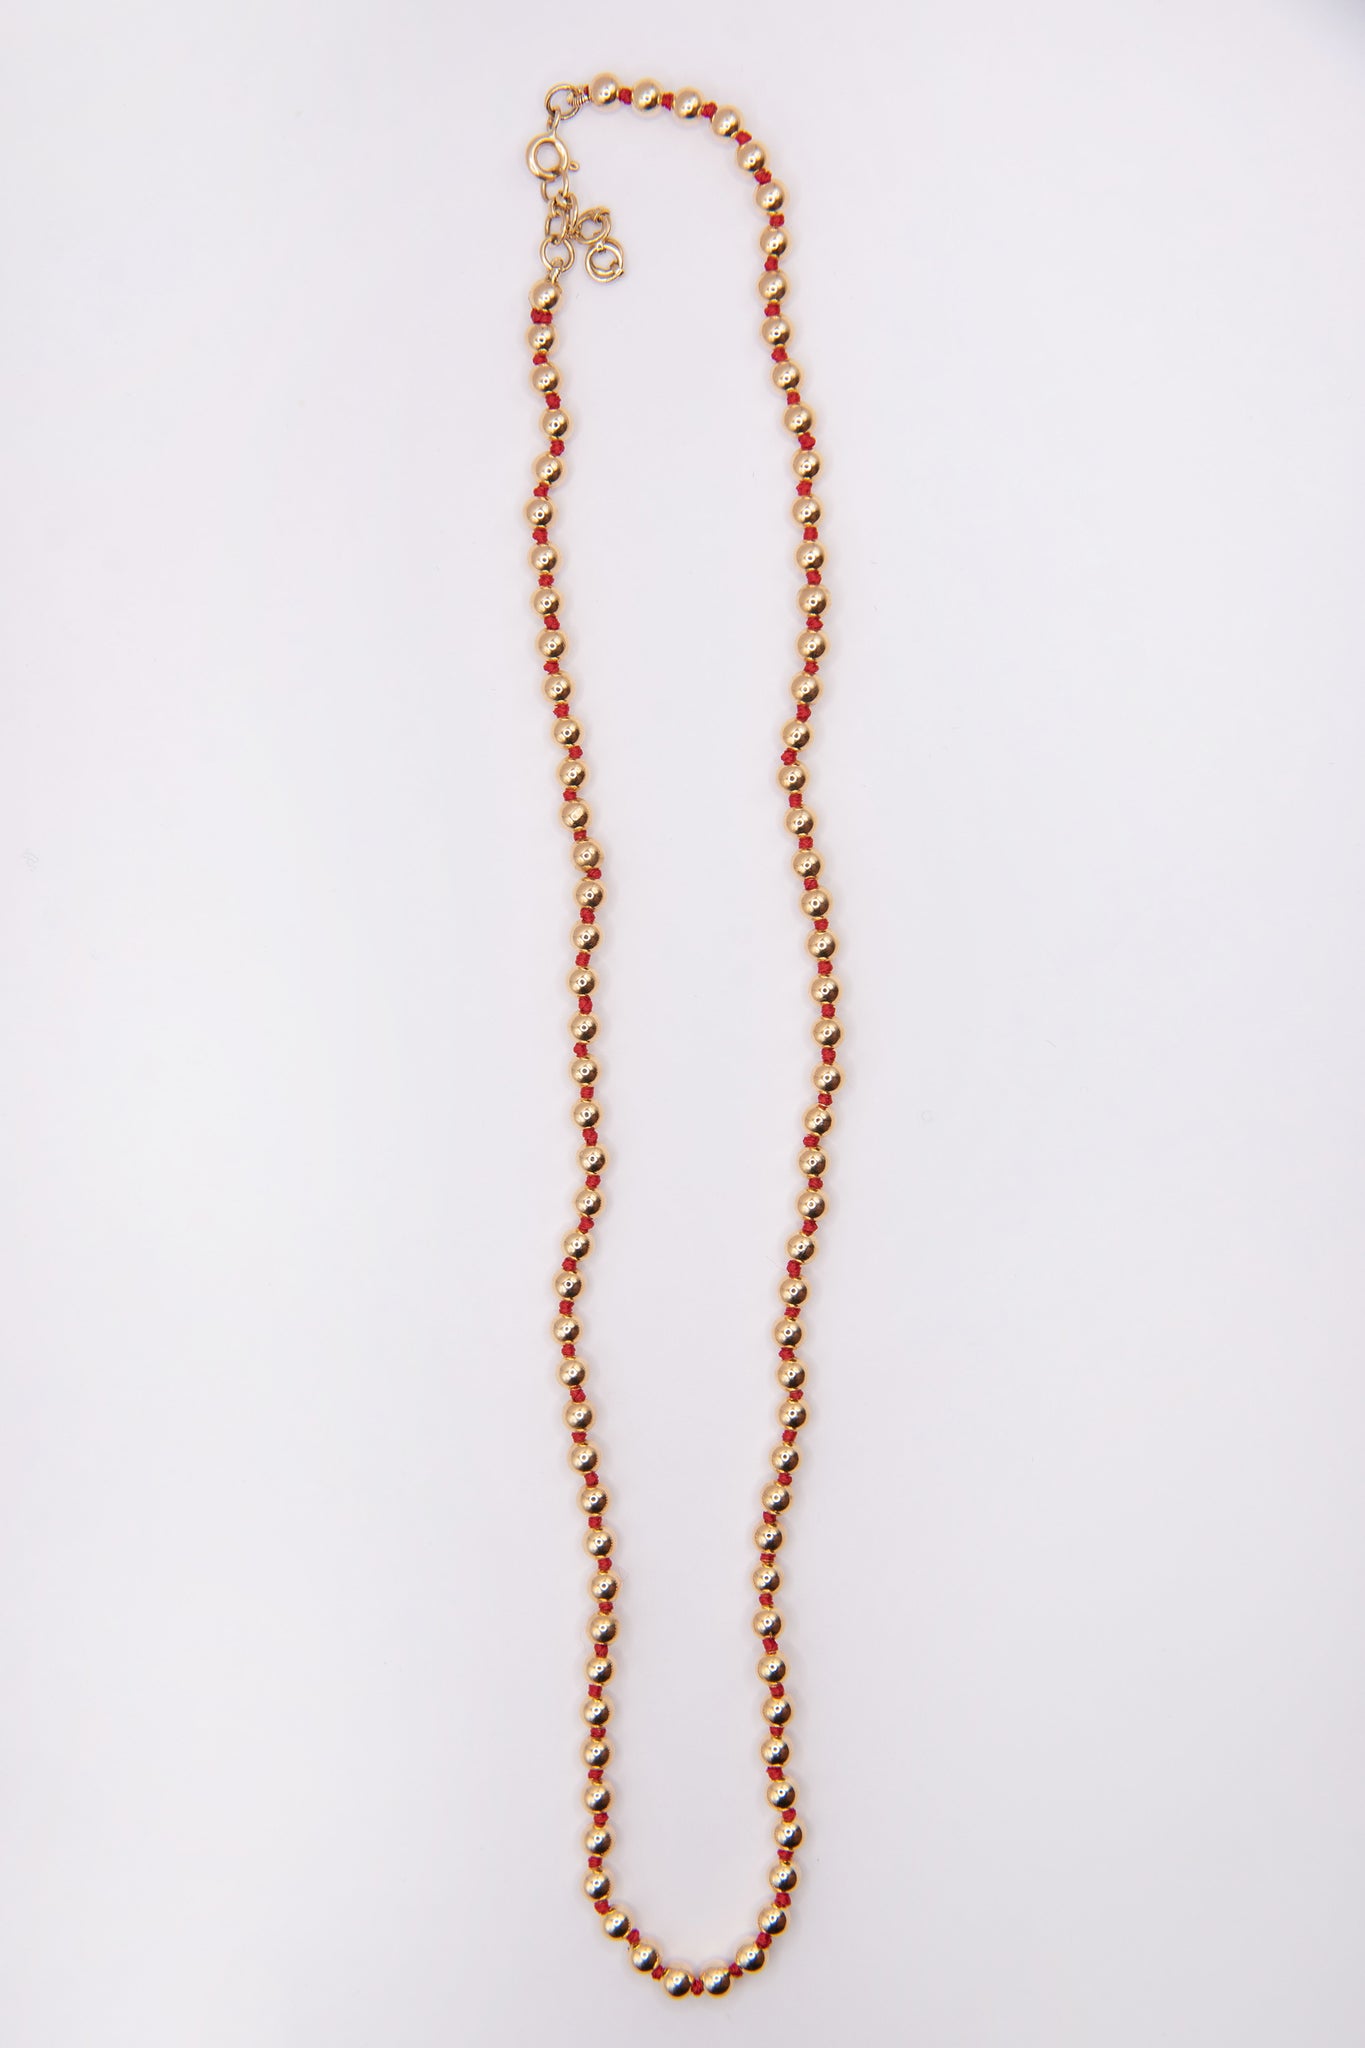 JOANNA DAHDAH - 4mm Beads Necklace, Yellow Gold